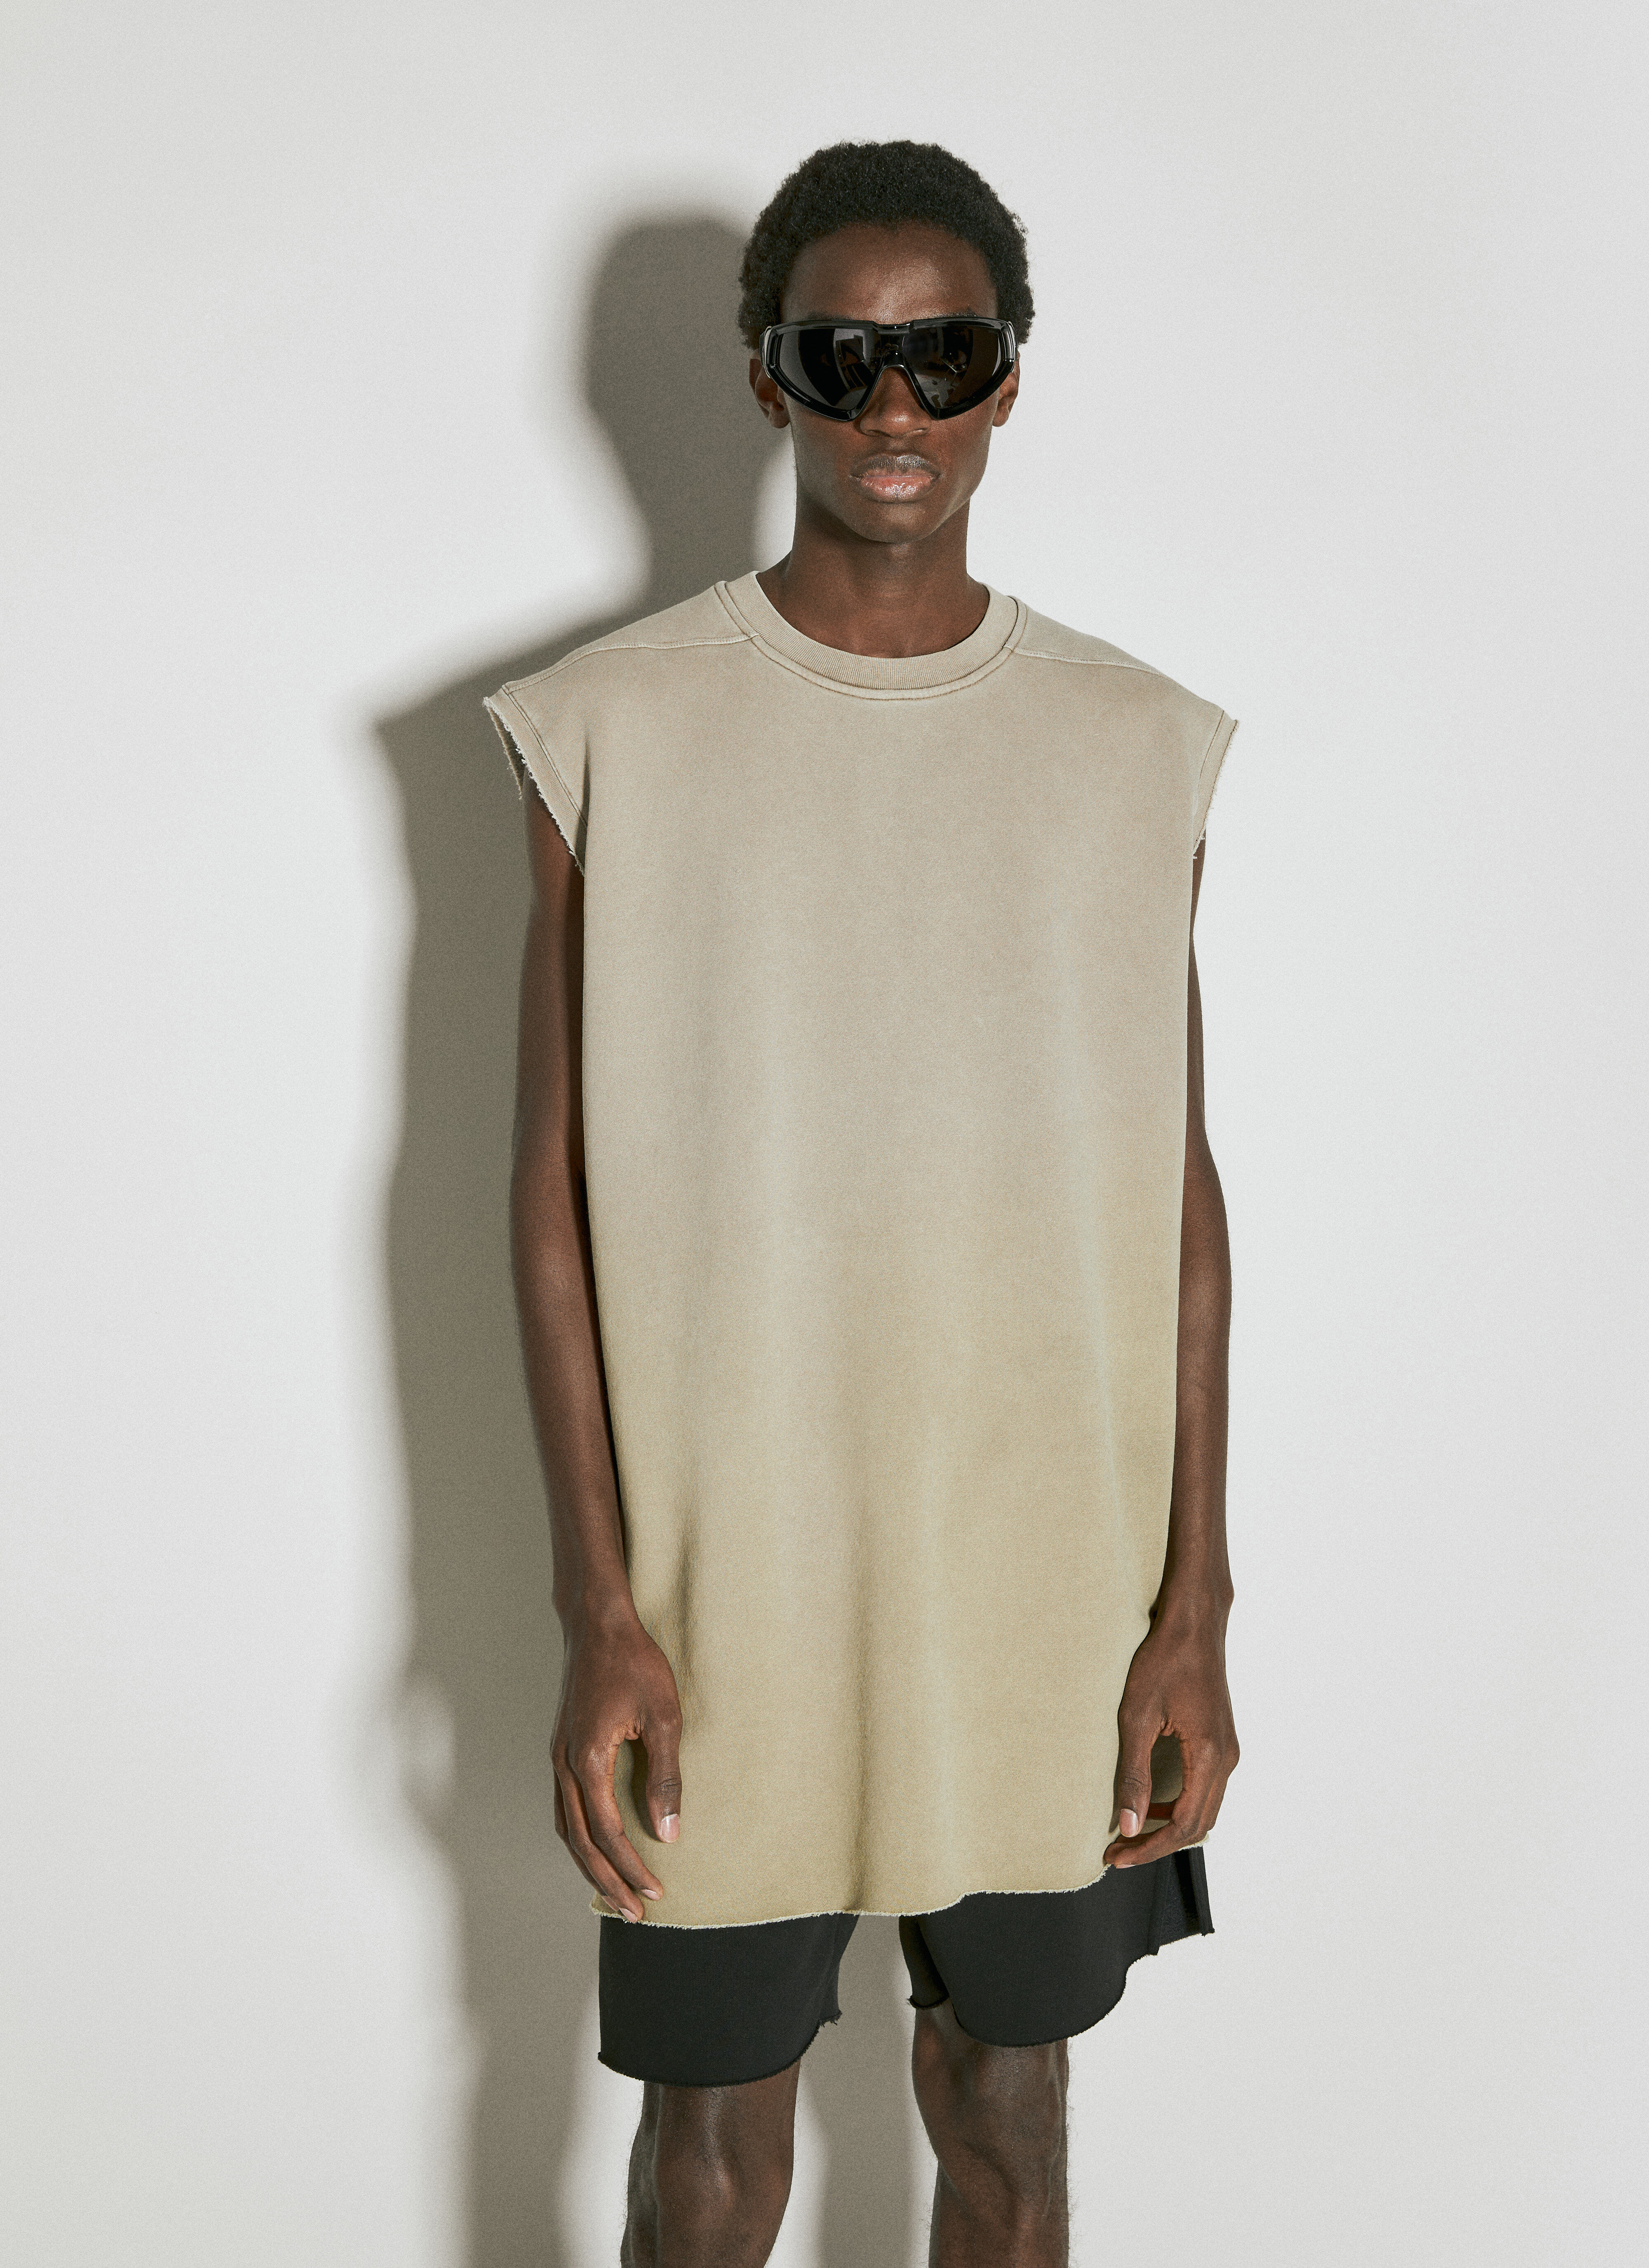 Moncler x Roc Nation designed by Jay-Z 타프 롱 티셔츠 블랙 mrn0156002